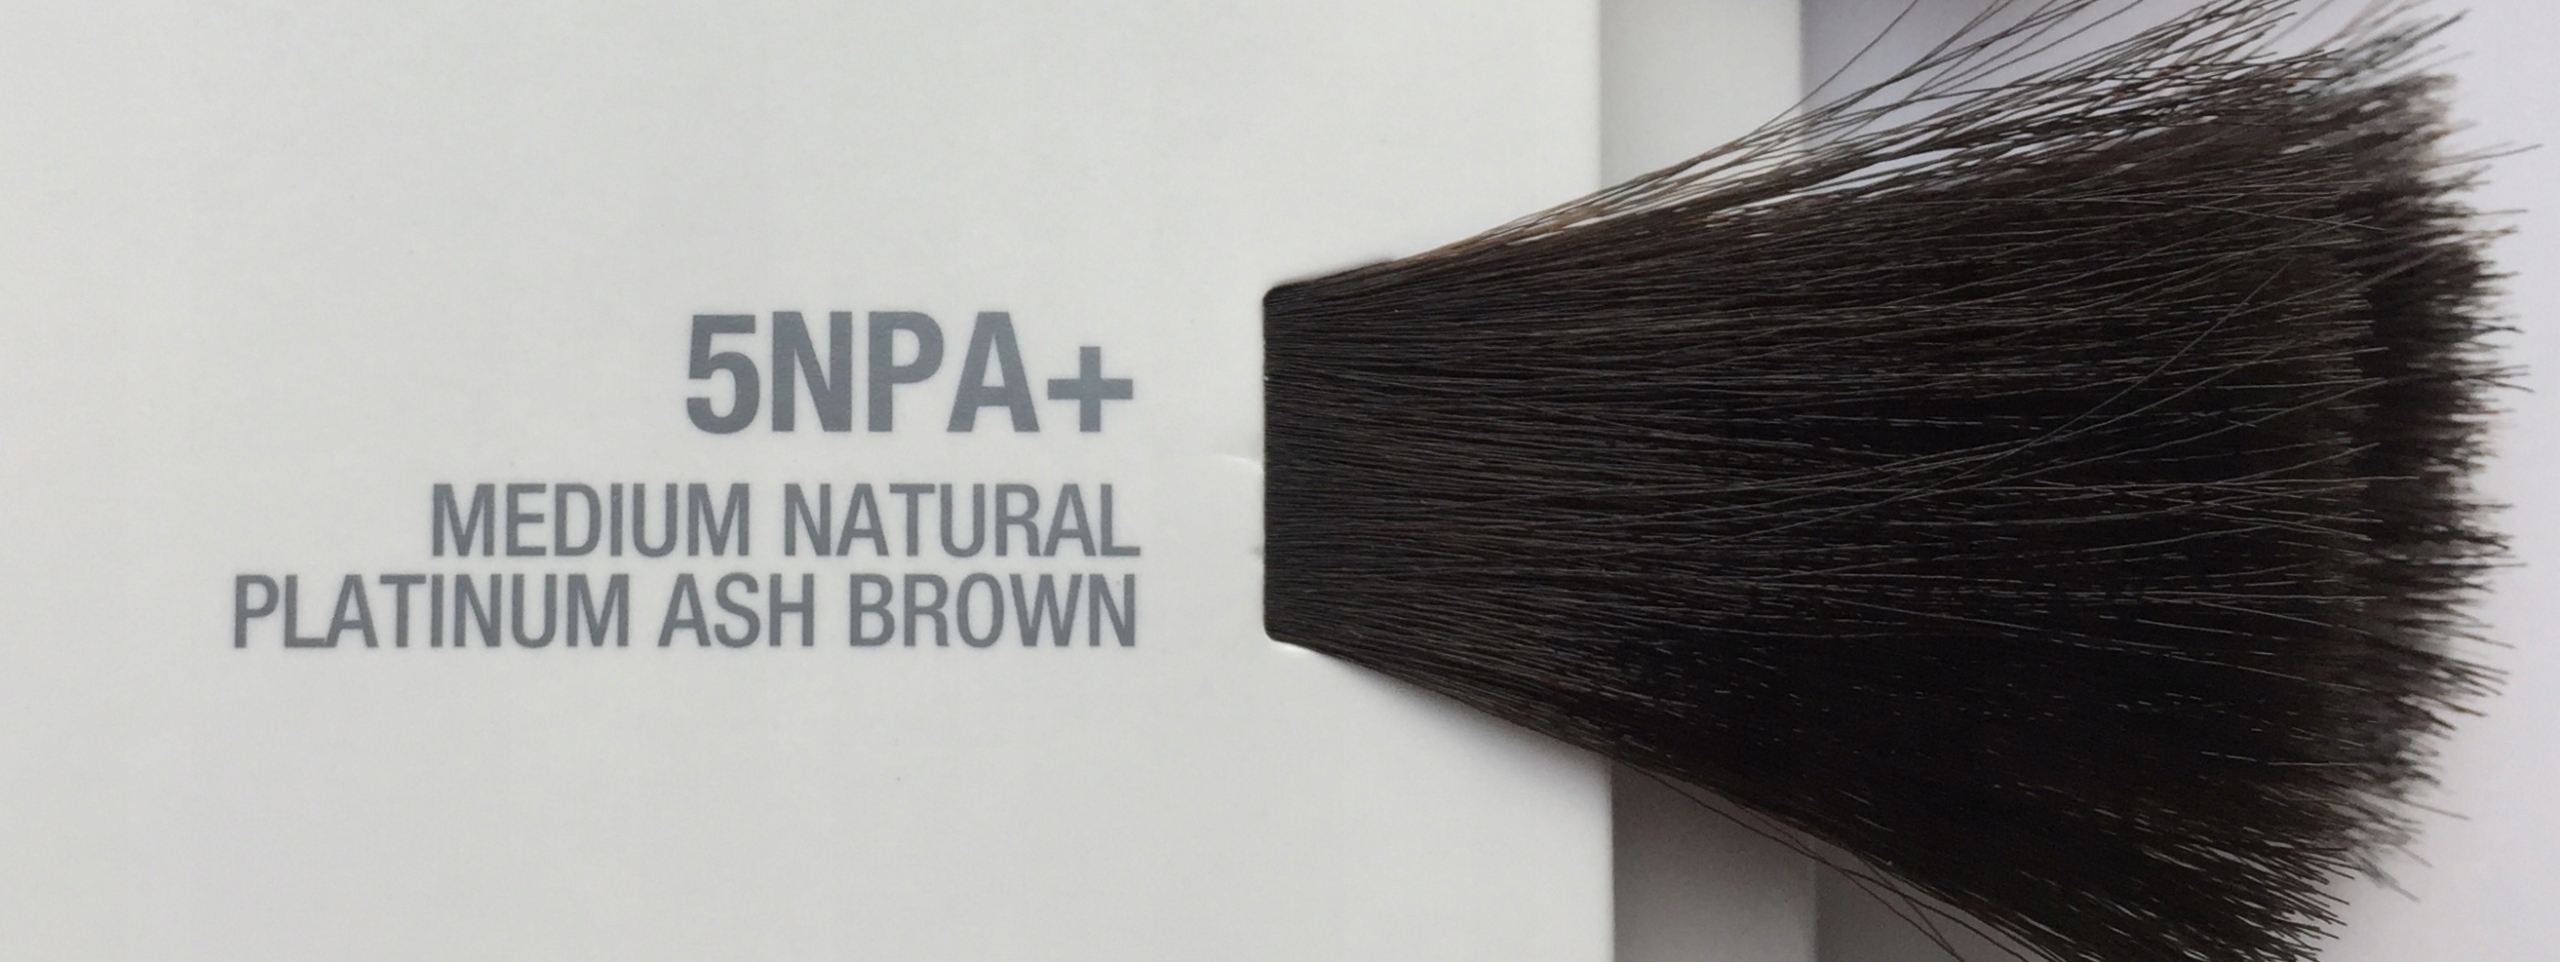 5NPA+ Medium Natural Platinum Ash Brown - Joico